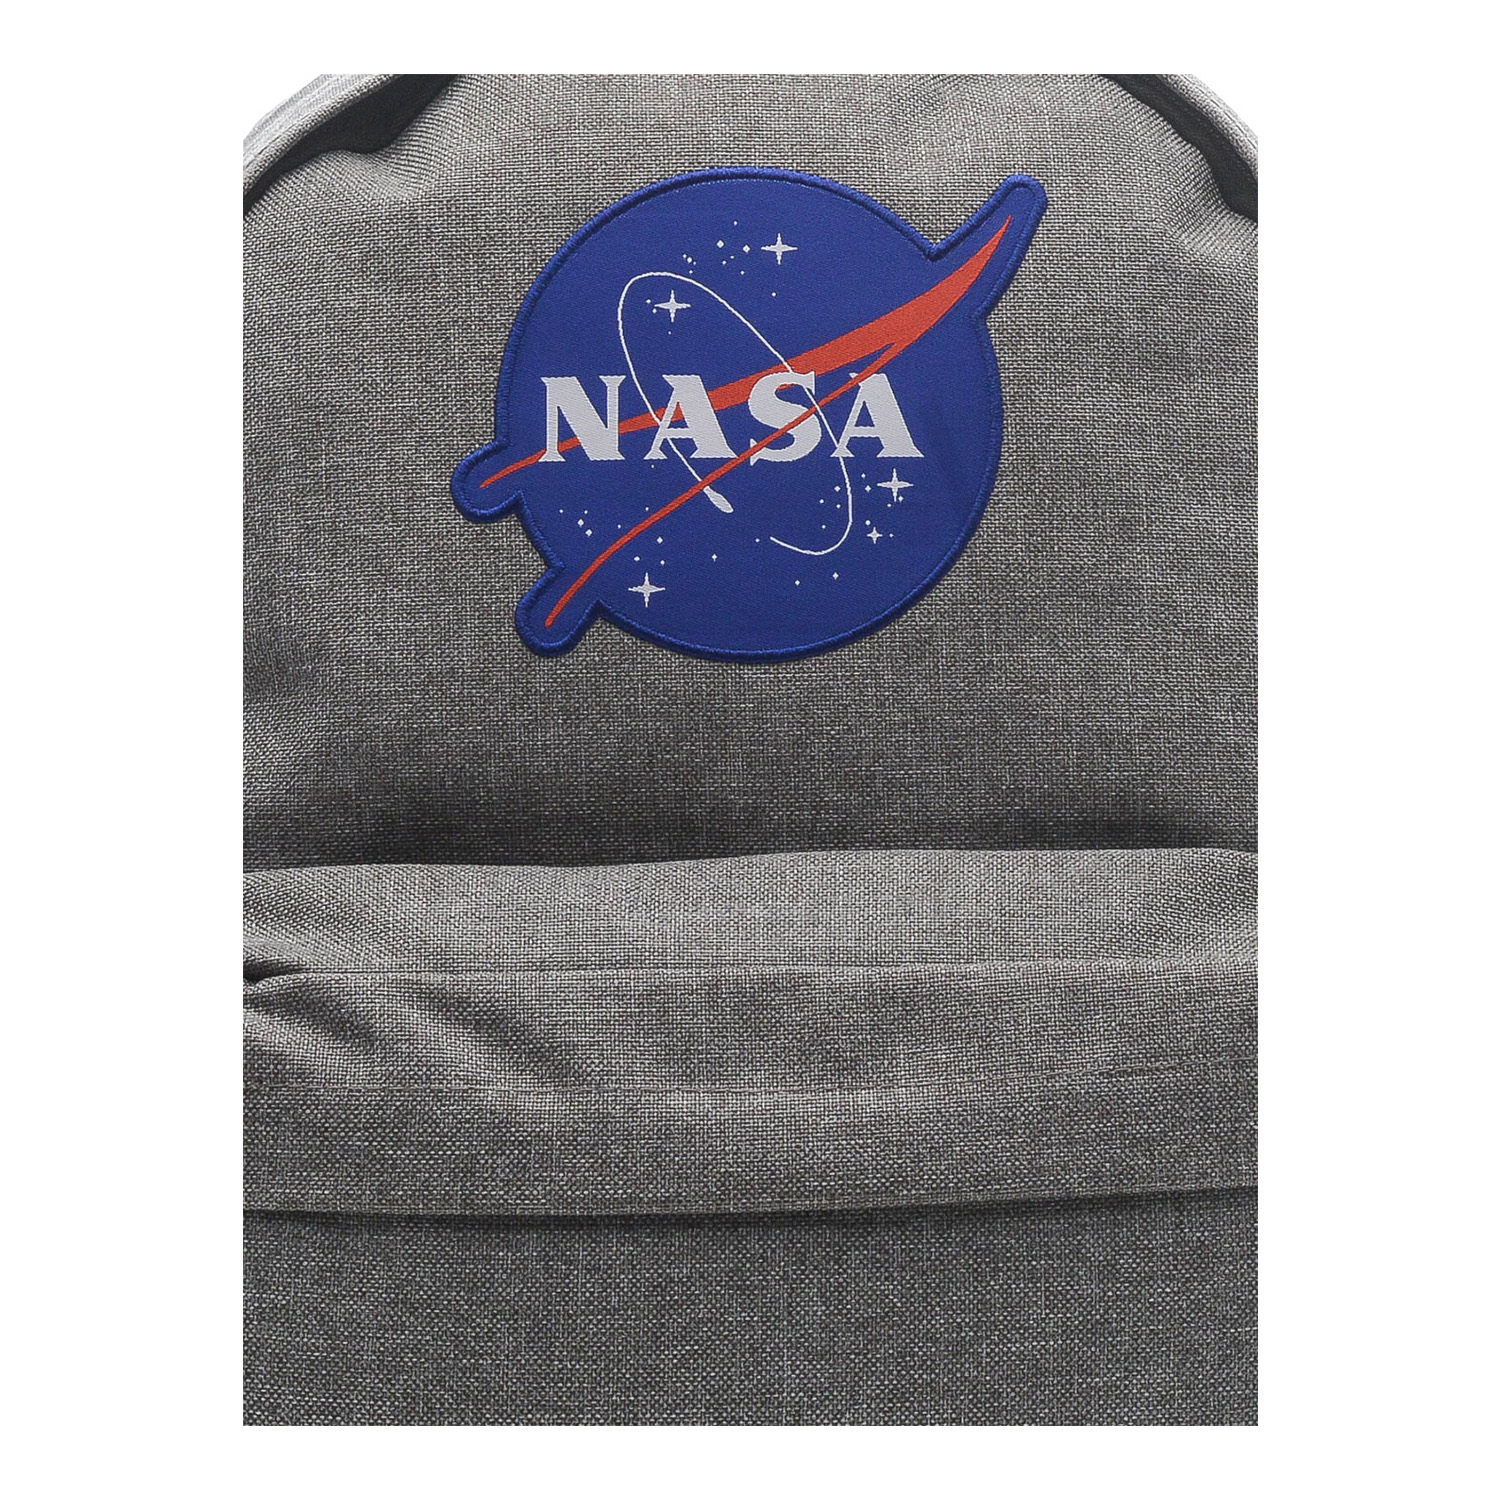 Рюкзак NASA 086109005-GMA-17 - фото 5